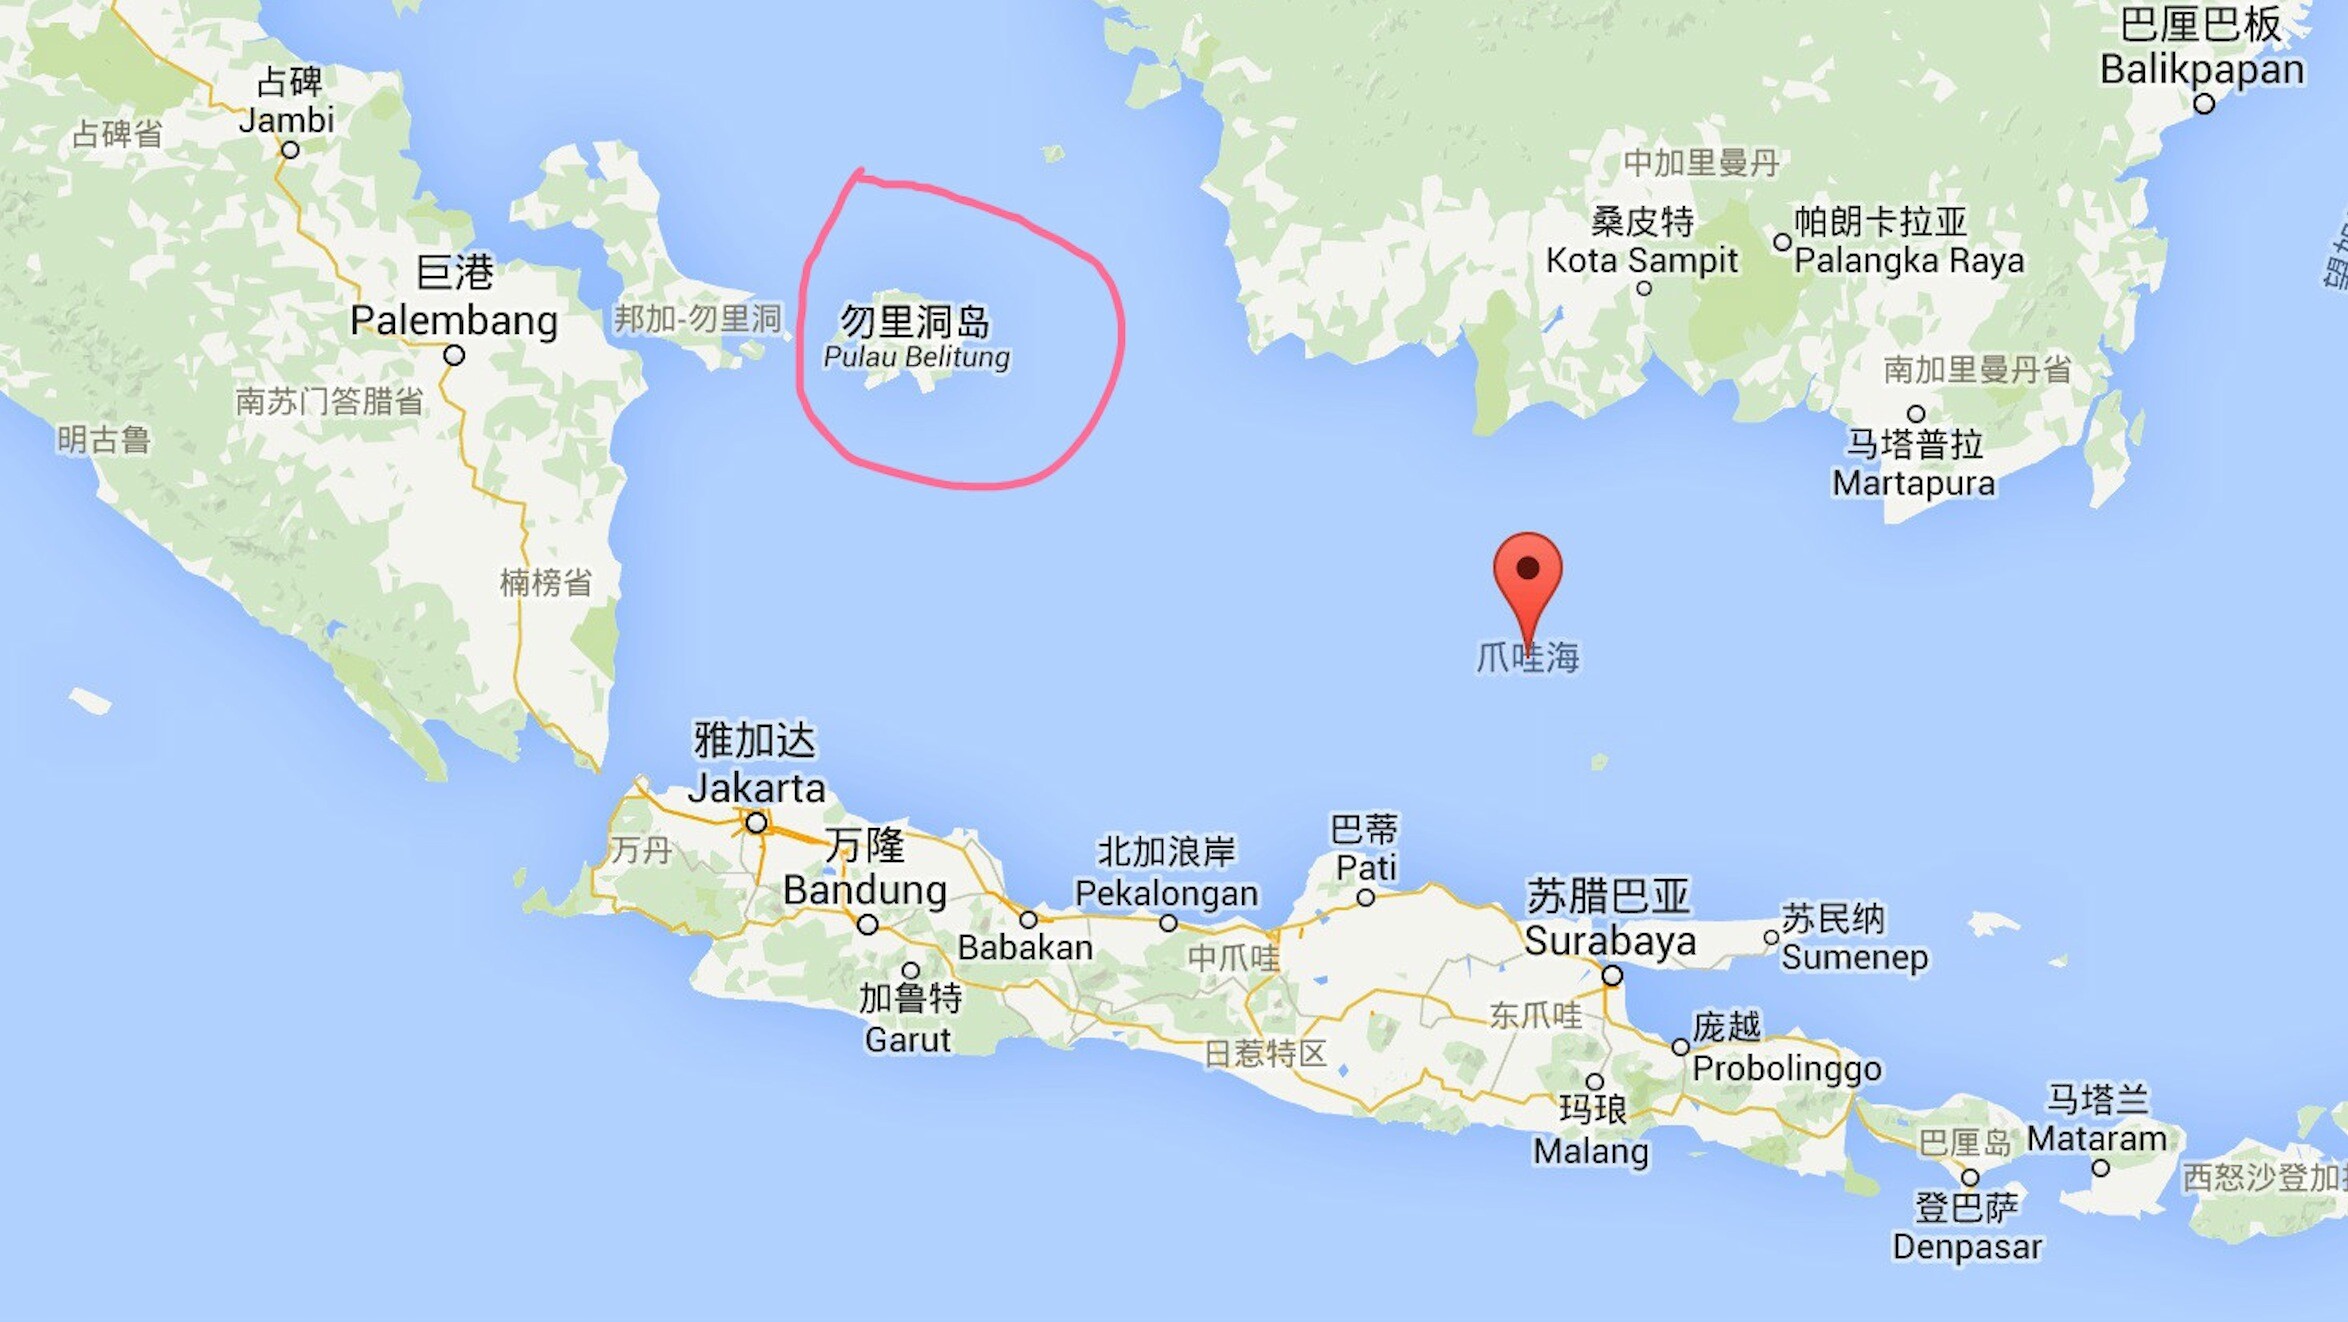 另一方面,新加坡民航局也证实亚航qz8501班机今早从尼西亚泗水